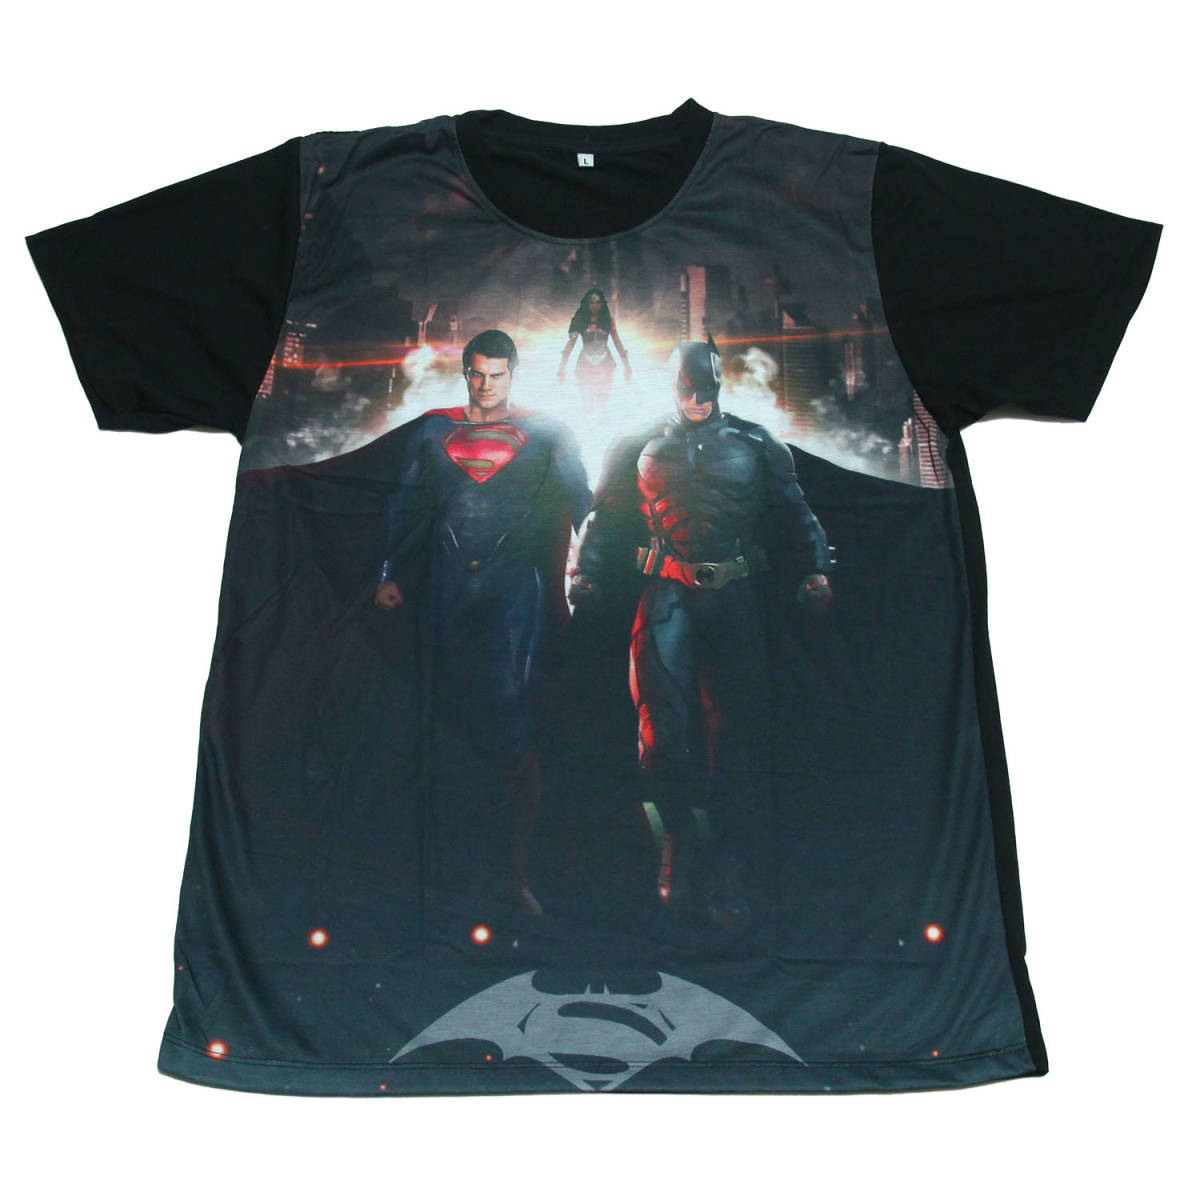 スパーマン バットマン 映画 アメリカ ヒーロー かっこいい ストリート系 デザインTシャツ おもしろTシャツ メンズ 半袖 tsr0178